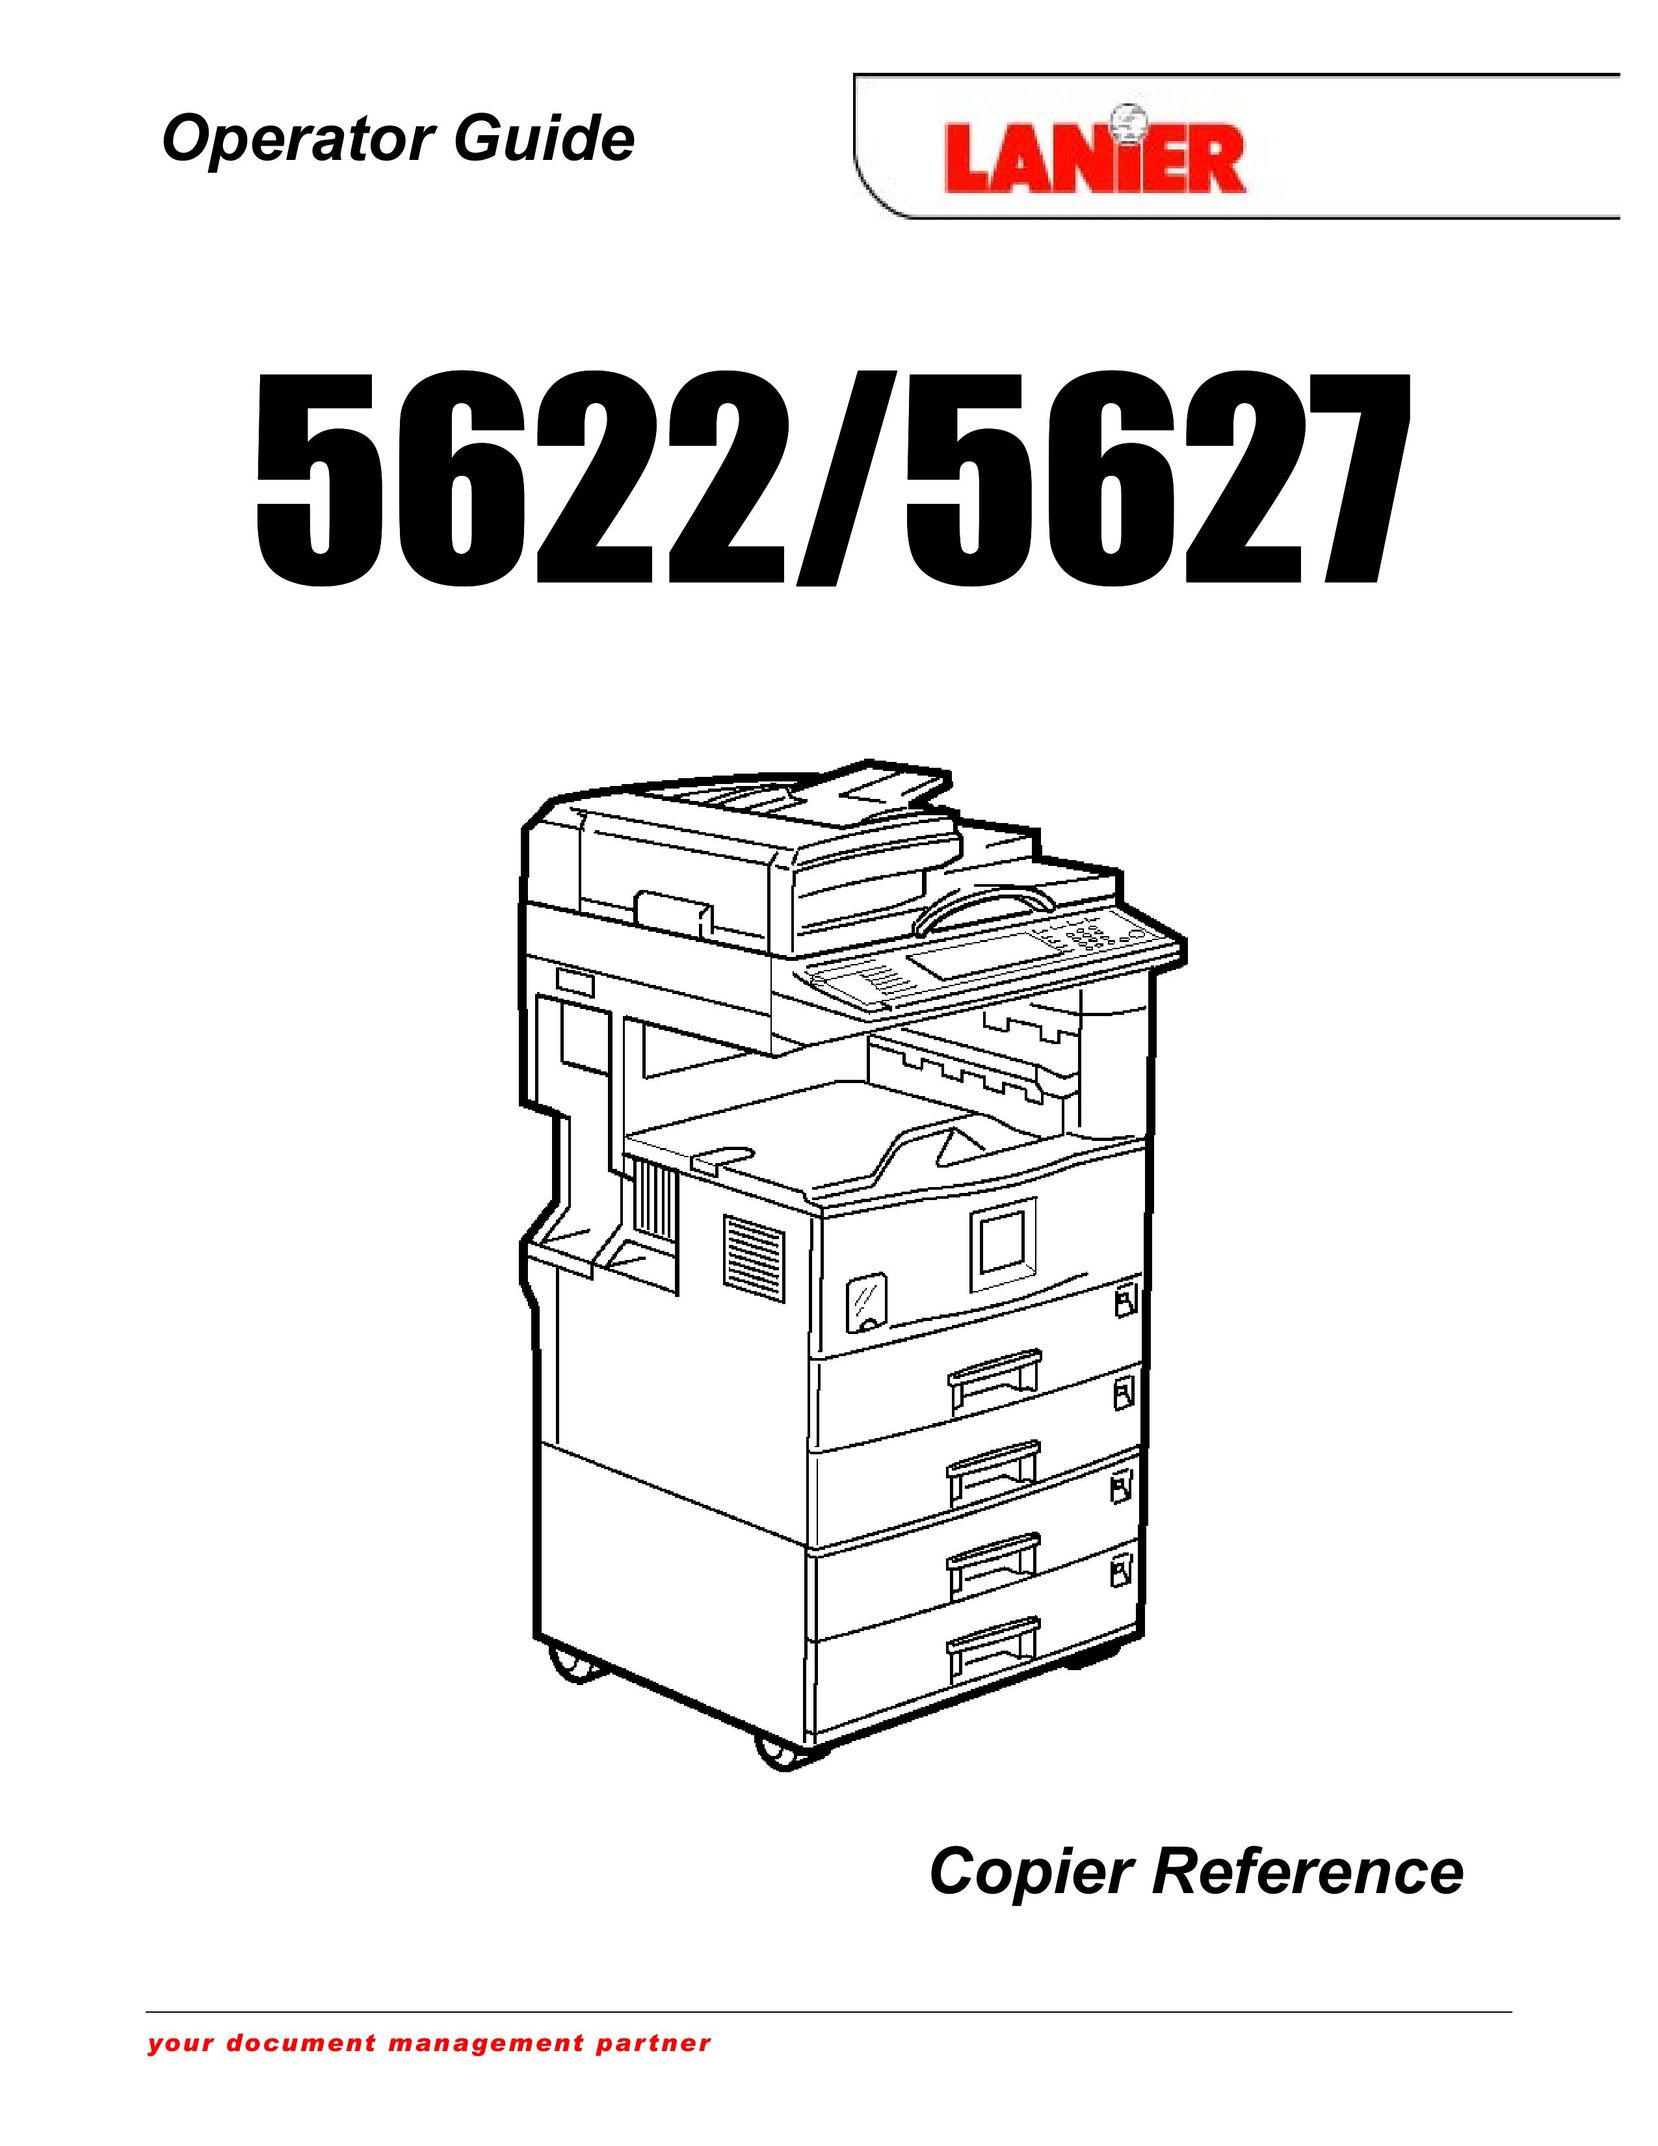 Lanier 1027 Copier User Manual (Page 1)